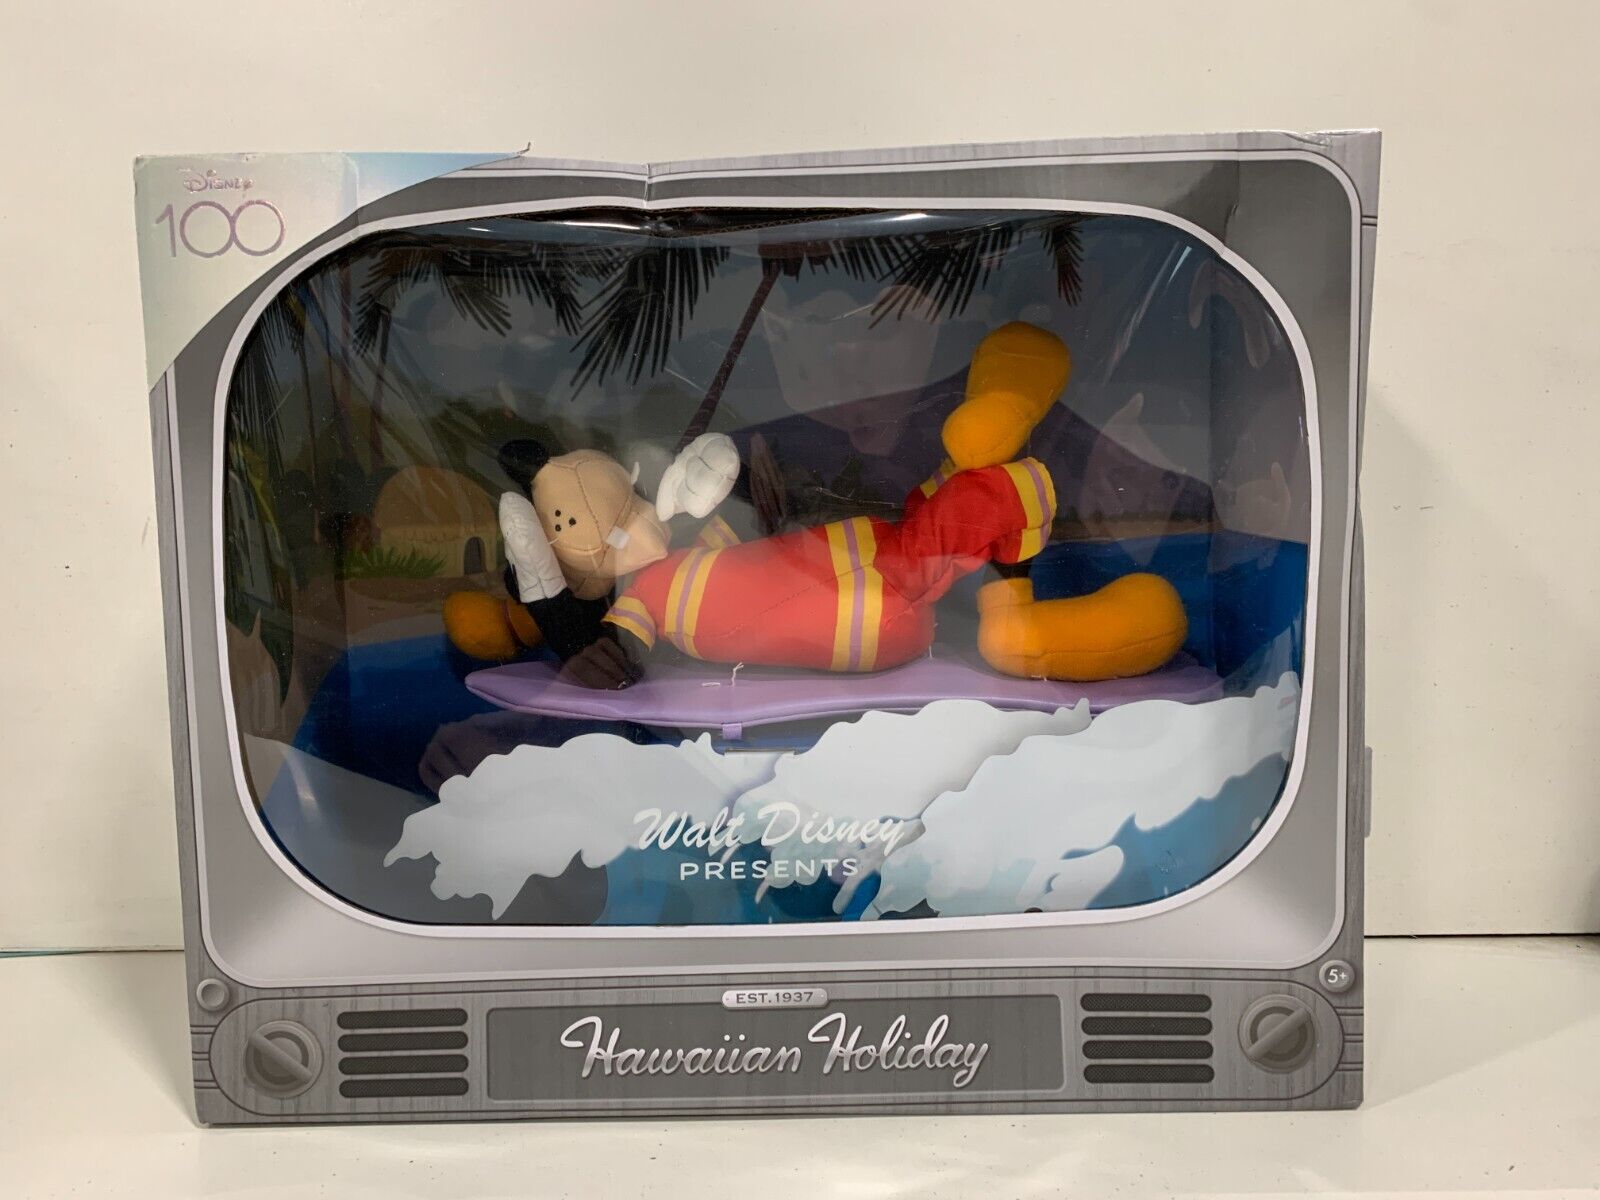 Disney100 Years of Wonder Walt Disney Presents “Hawaiian Holiday” Goofy Plush